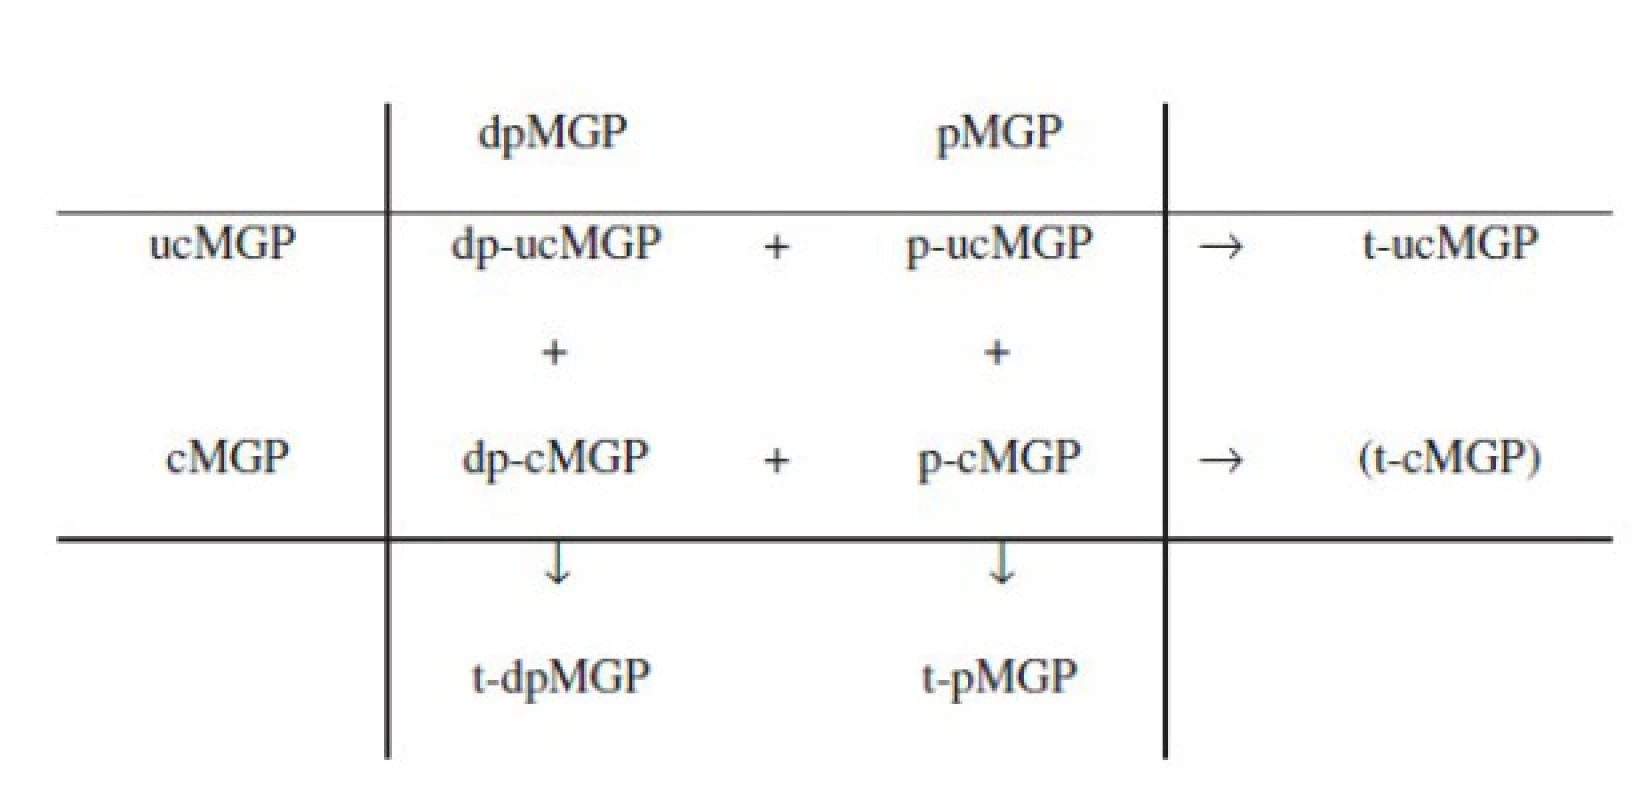 Cirkulující kvantifikovatelné izoformy matrix Gla proteinu v závislosti na stupni karboxylace a fosforylace (upraveno dle: Dalmeijer et al., 2013)